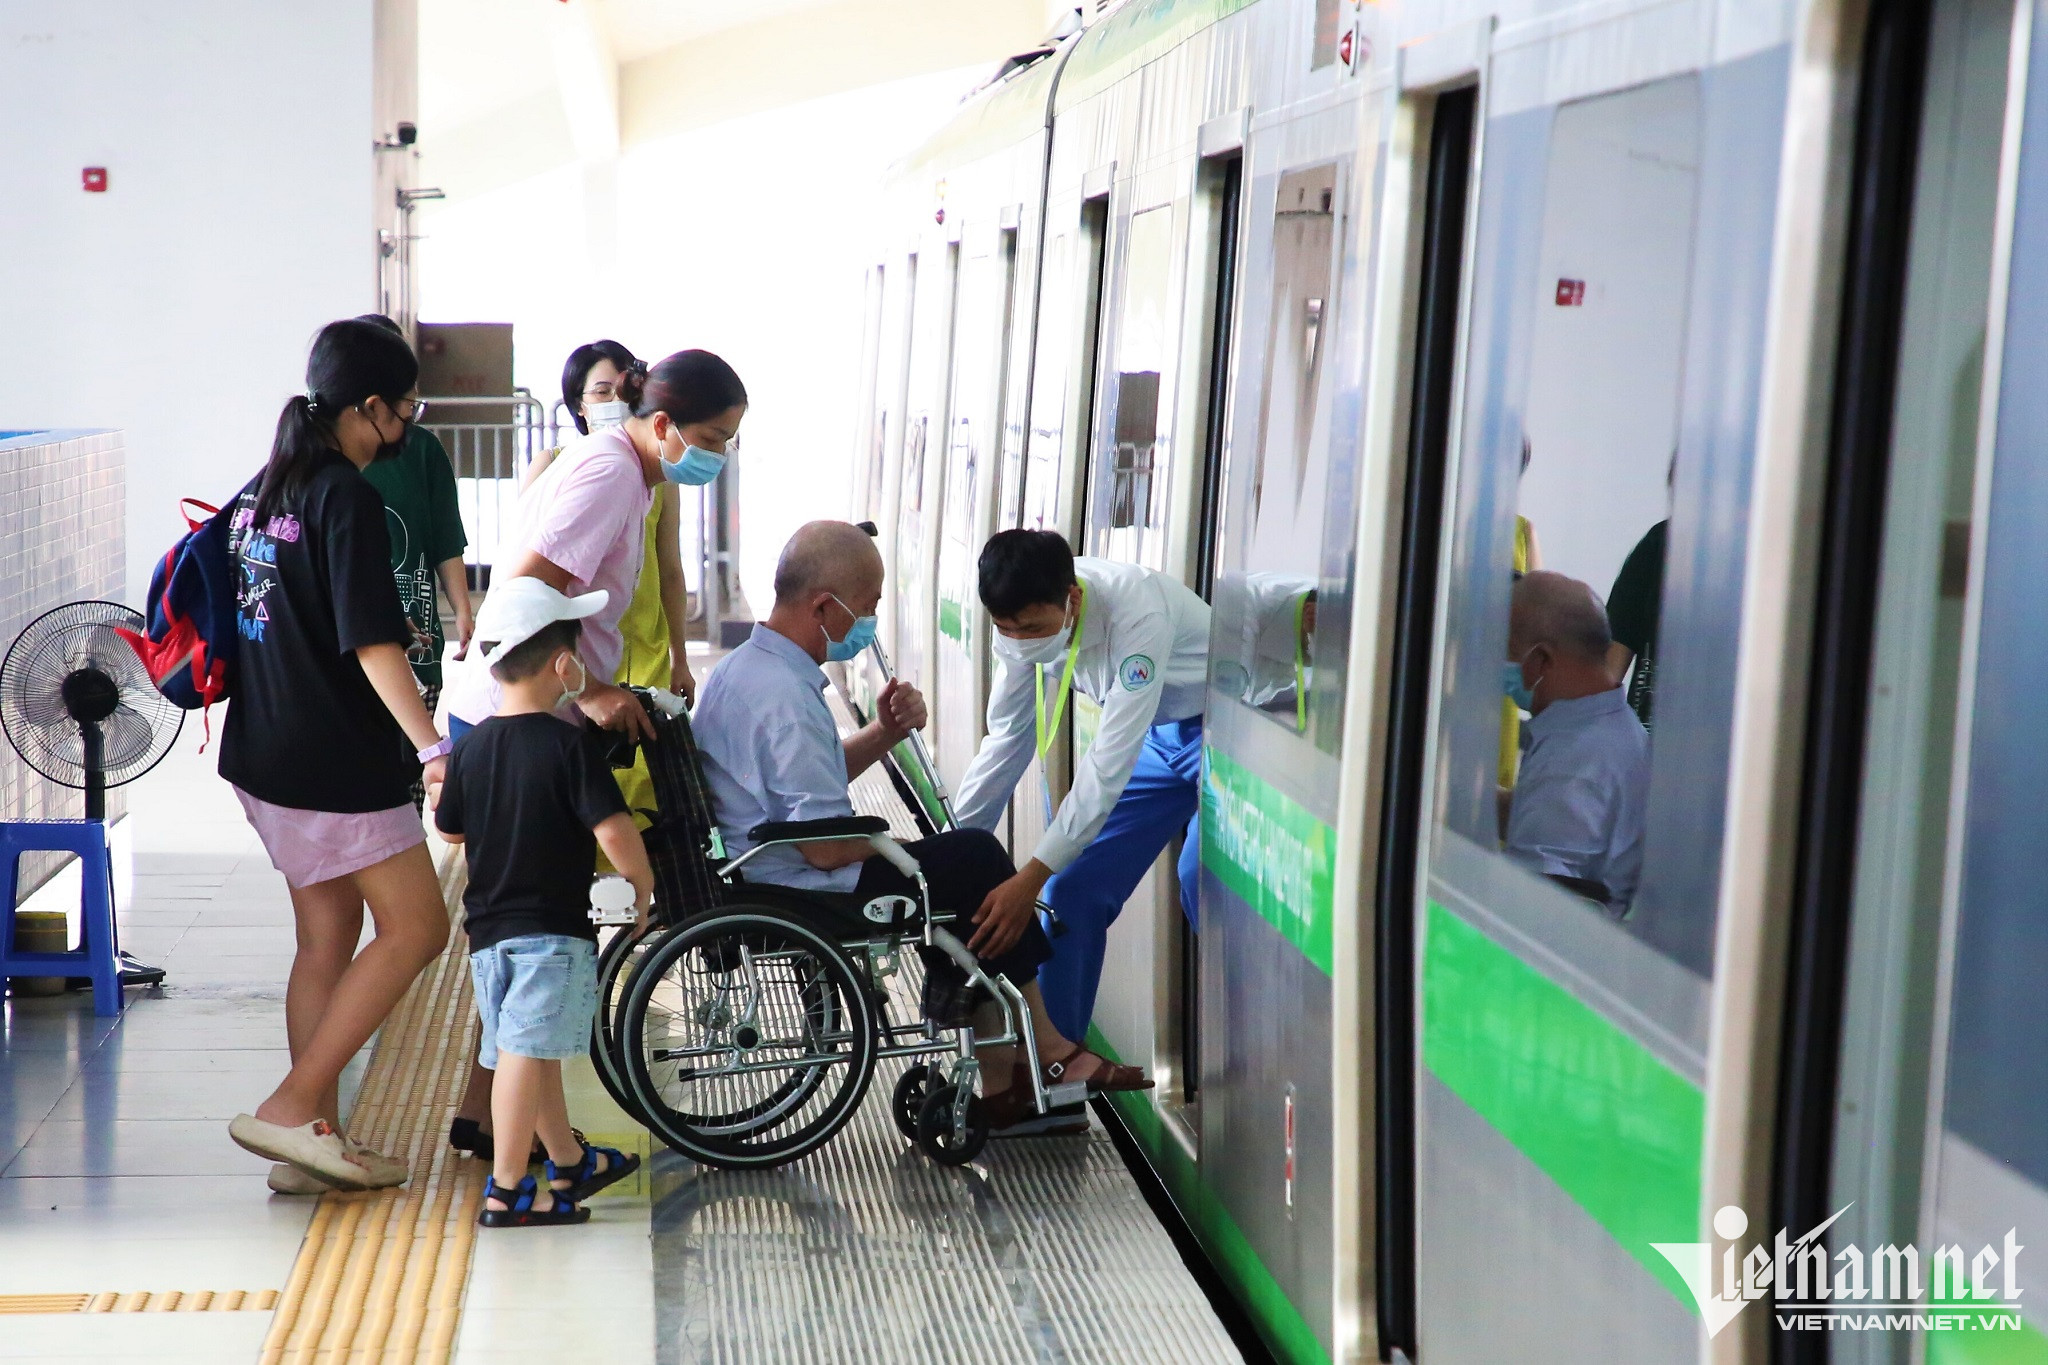 Theo ông Vũ Hồng Trường, Tổng Giám đốc Hanoi Metro, cần tăng cường mọi hướng tiếp cận đường sắt đô thị bằng cách tạo không gian đi bộ thông thoáng, tăng cường các điểm trông giữ xe quanh nhà ga. Trong đó, cần quan tâm nhiều hơn đến hành lang dành cho người khuyết tật, người già.